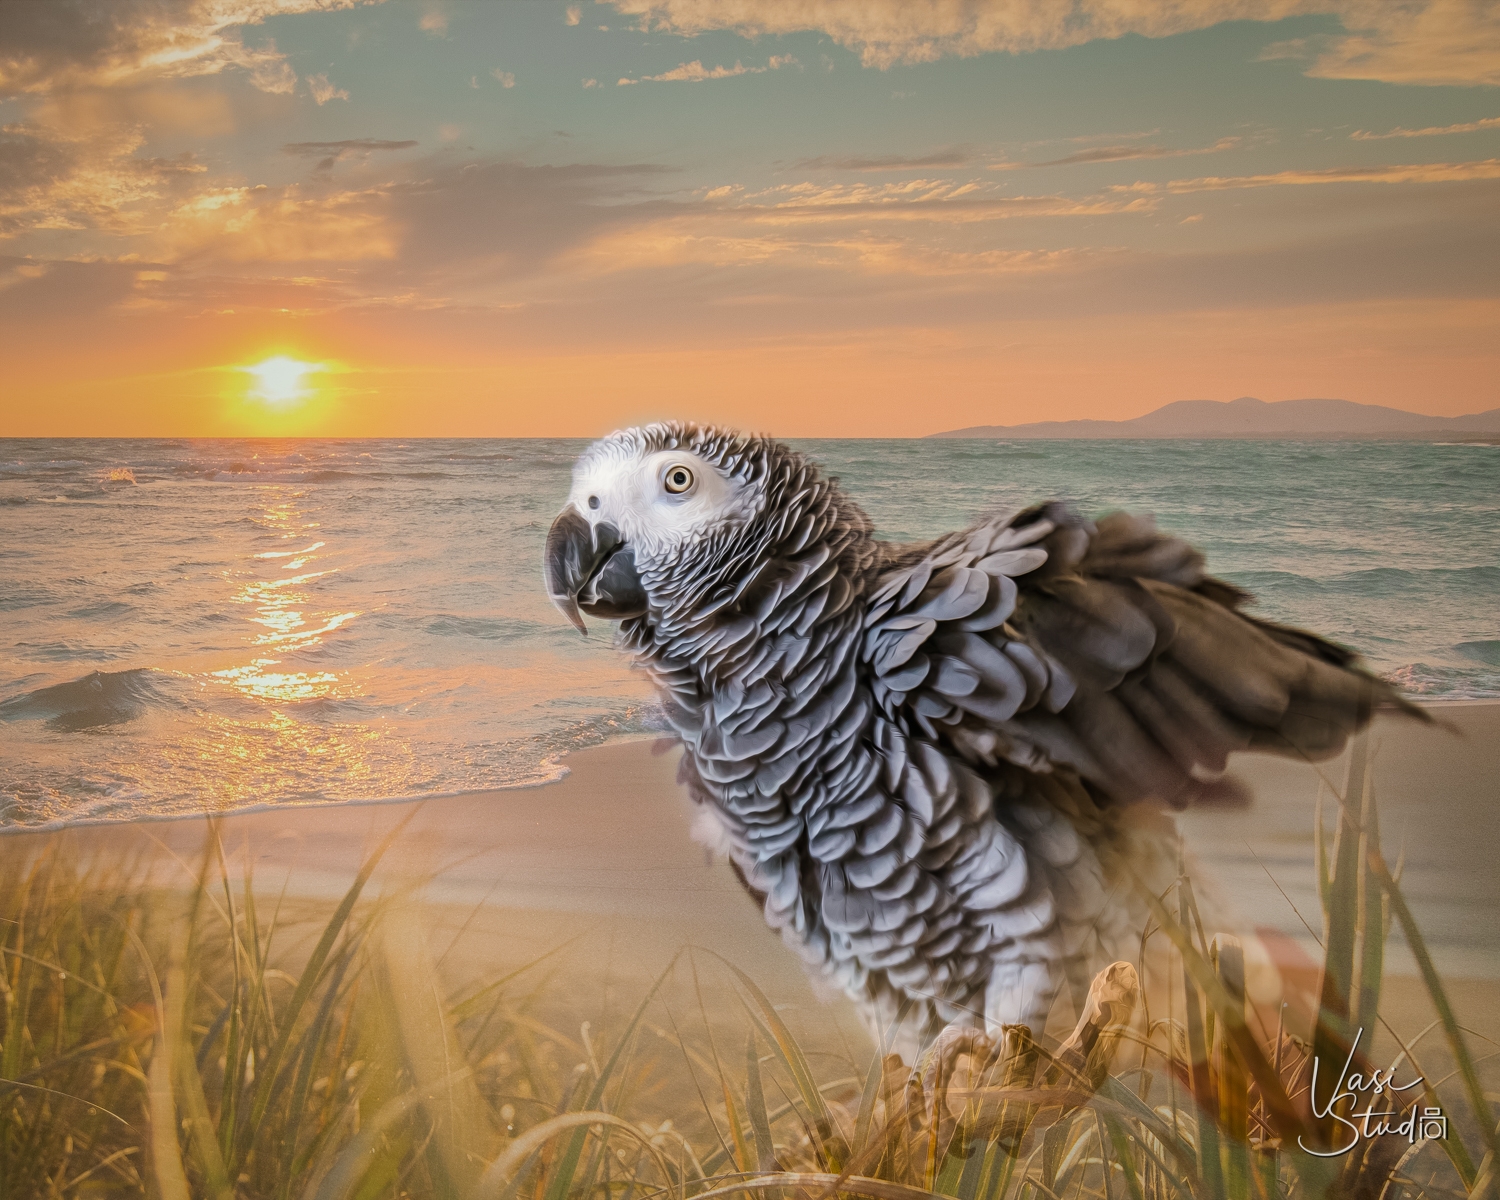 Fine Art of a Bird " The Beach"